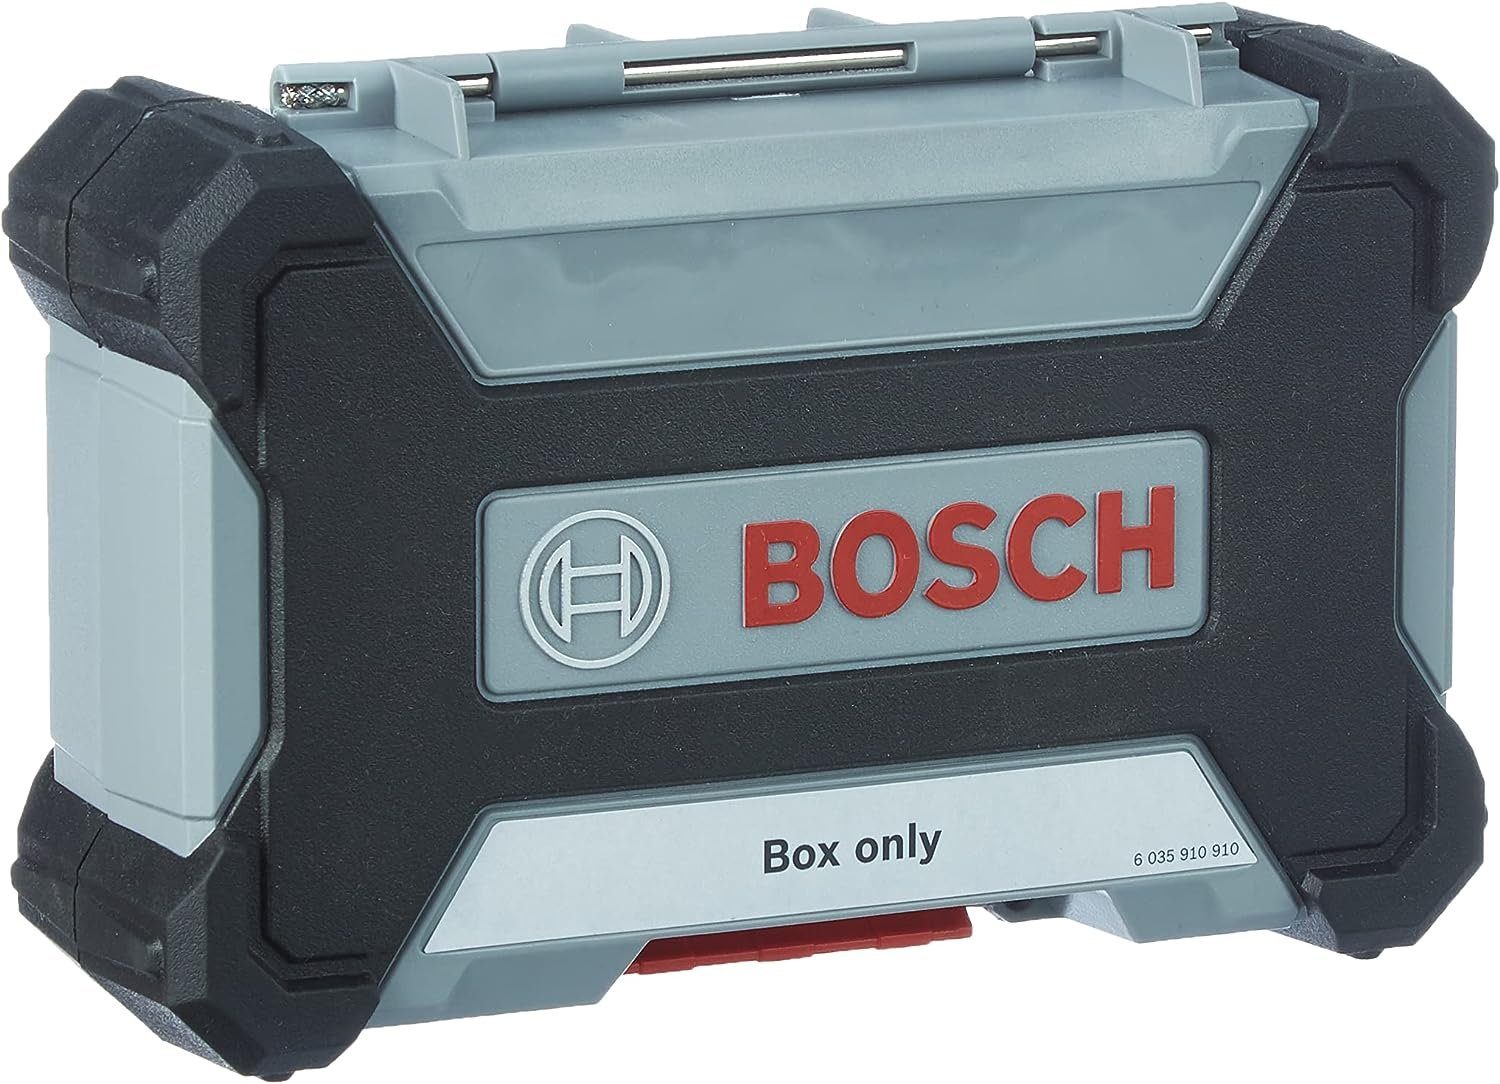 BOSCH Bohrer- und Bitset Bosch Professional Pick and Click Box Leer L Zubehör Schrauberbit